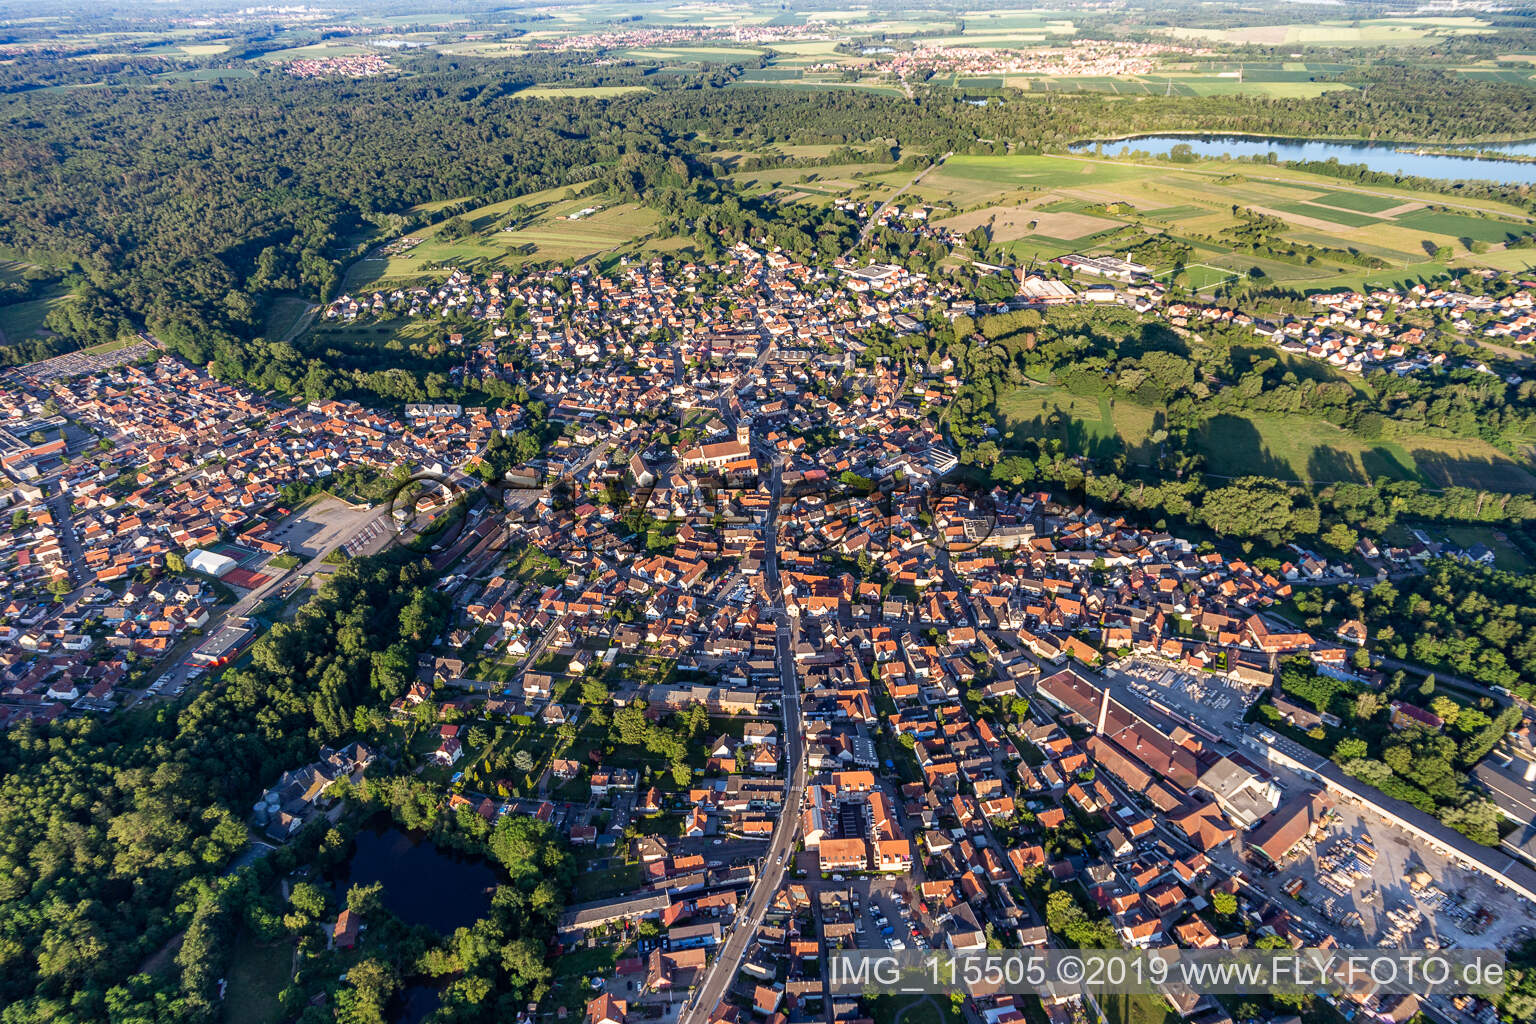 Haguenau im Bundesland Bas-Rhin, Frankreich aus der Drohnenperspektive